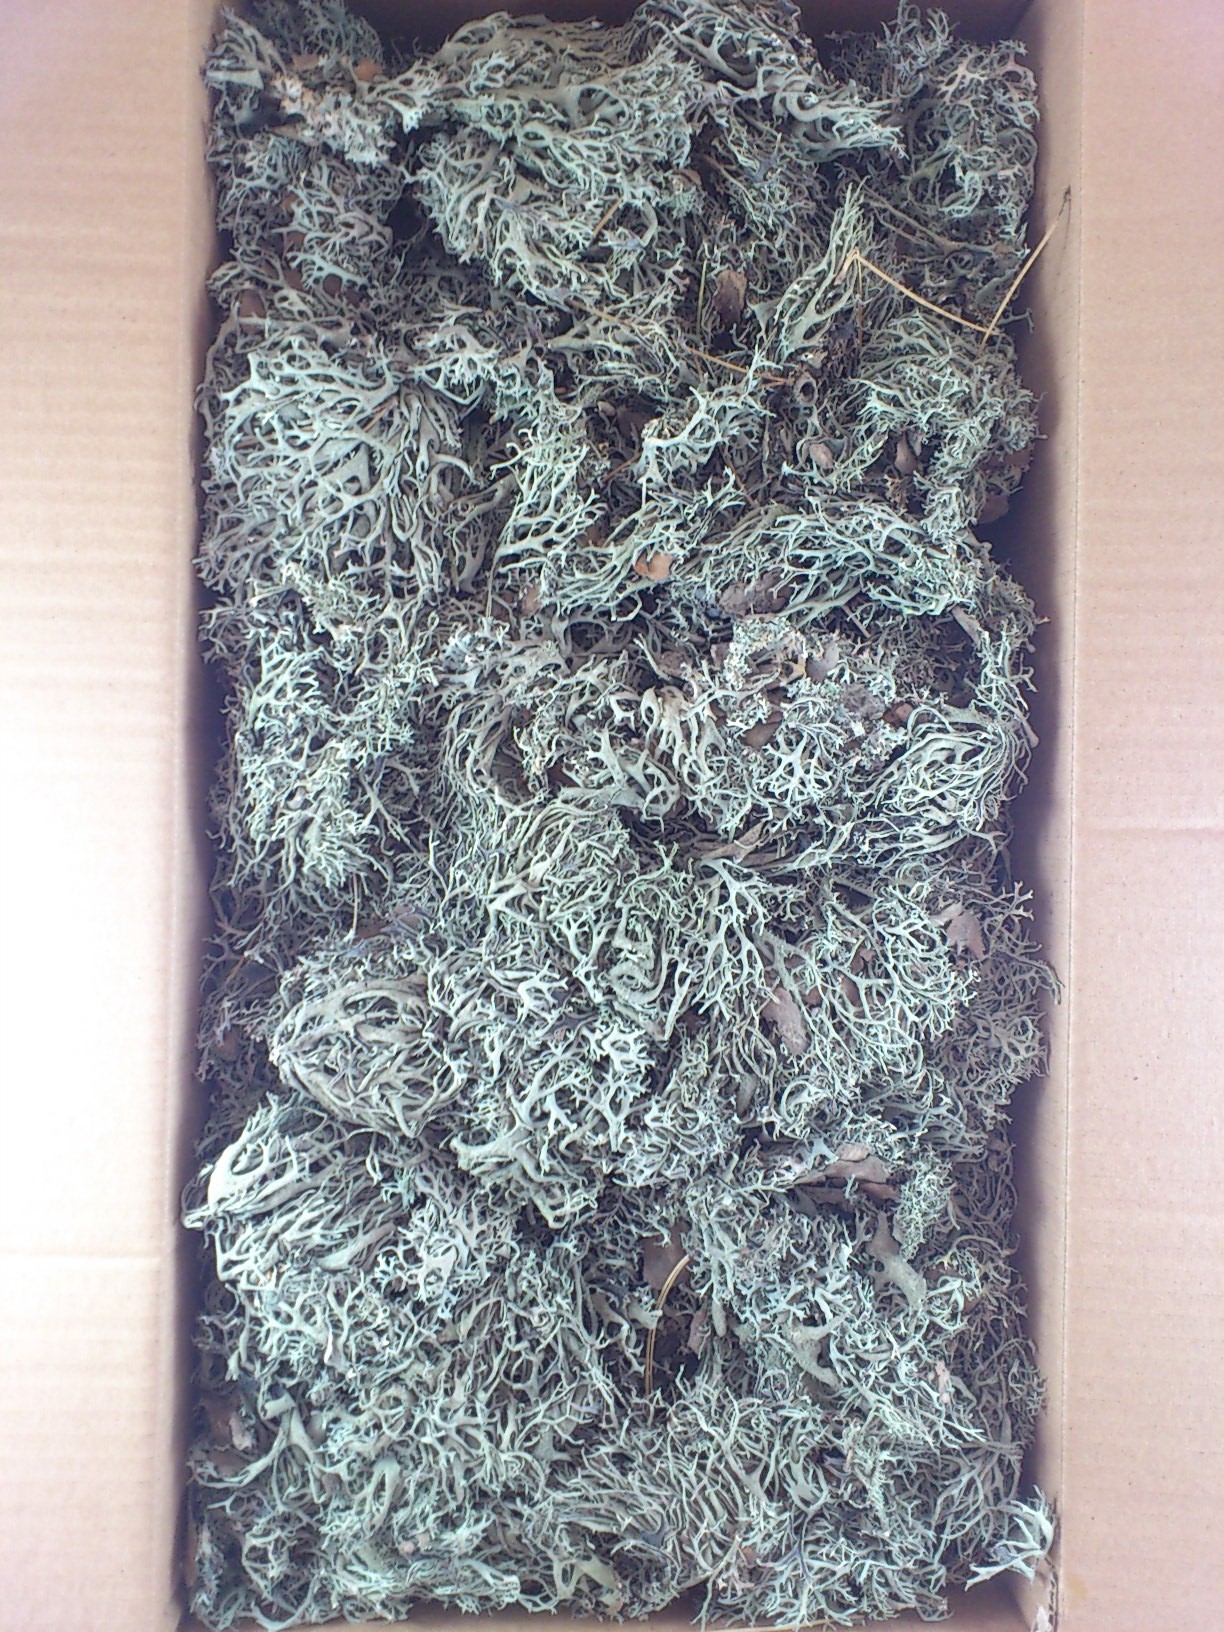 Tree moss  box 1 kg.